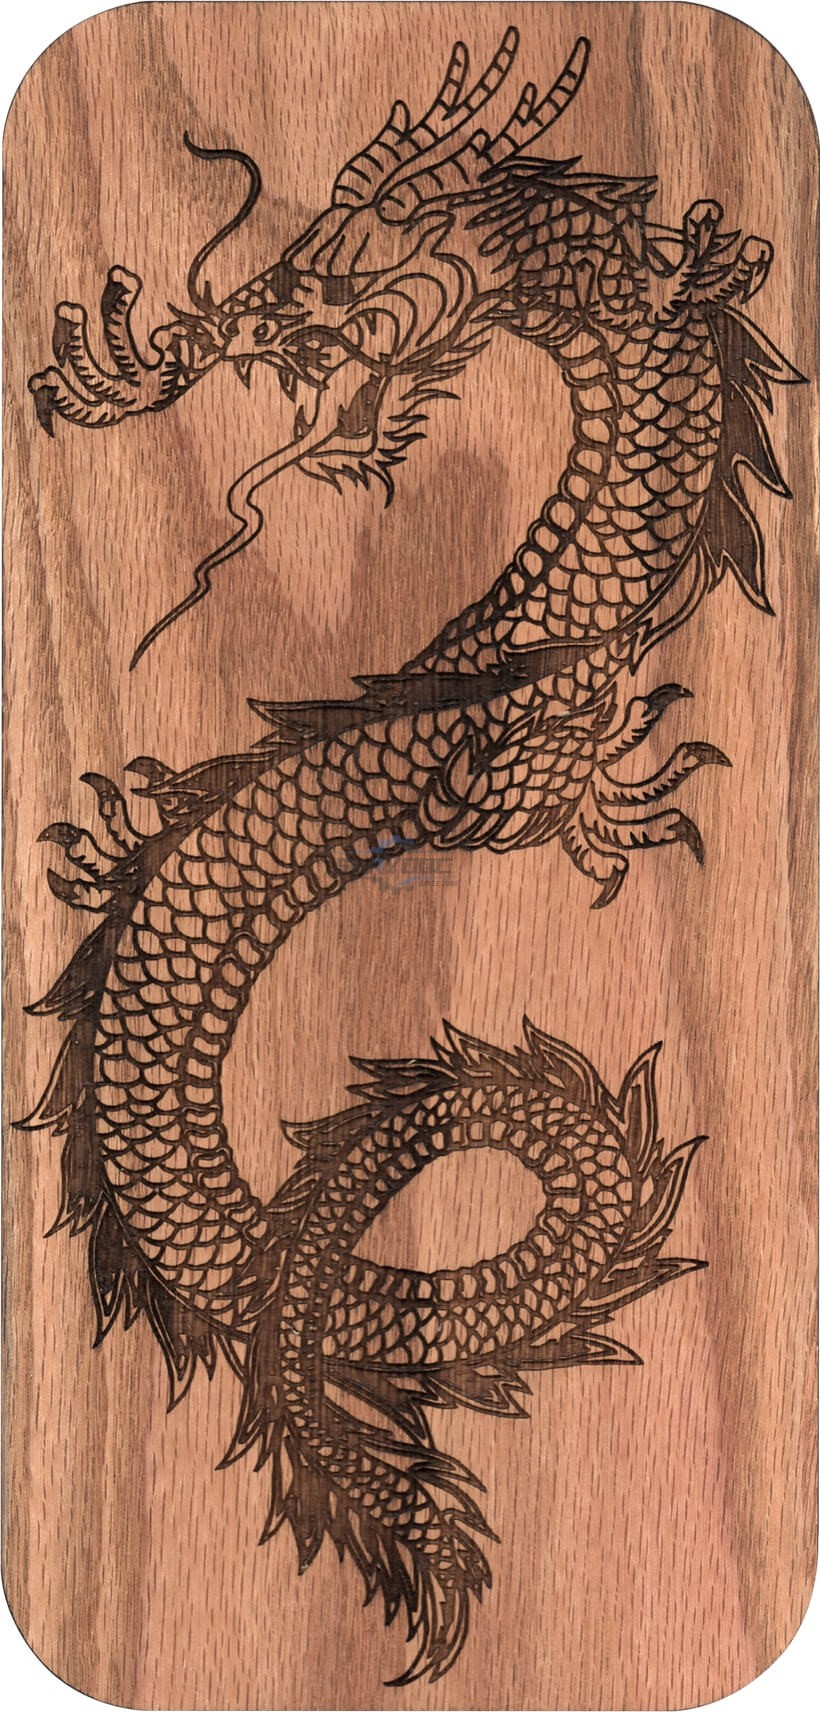 wood engraving works